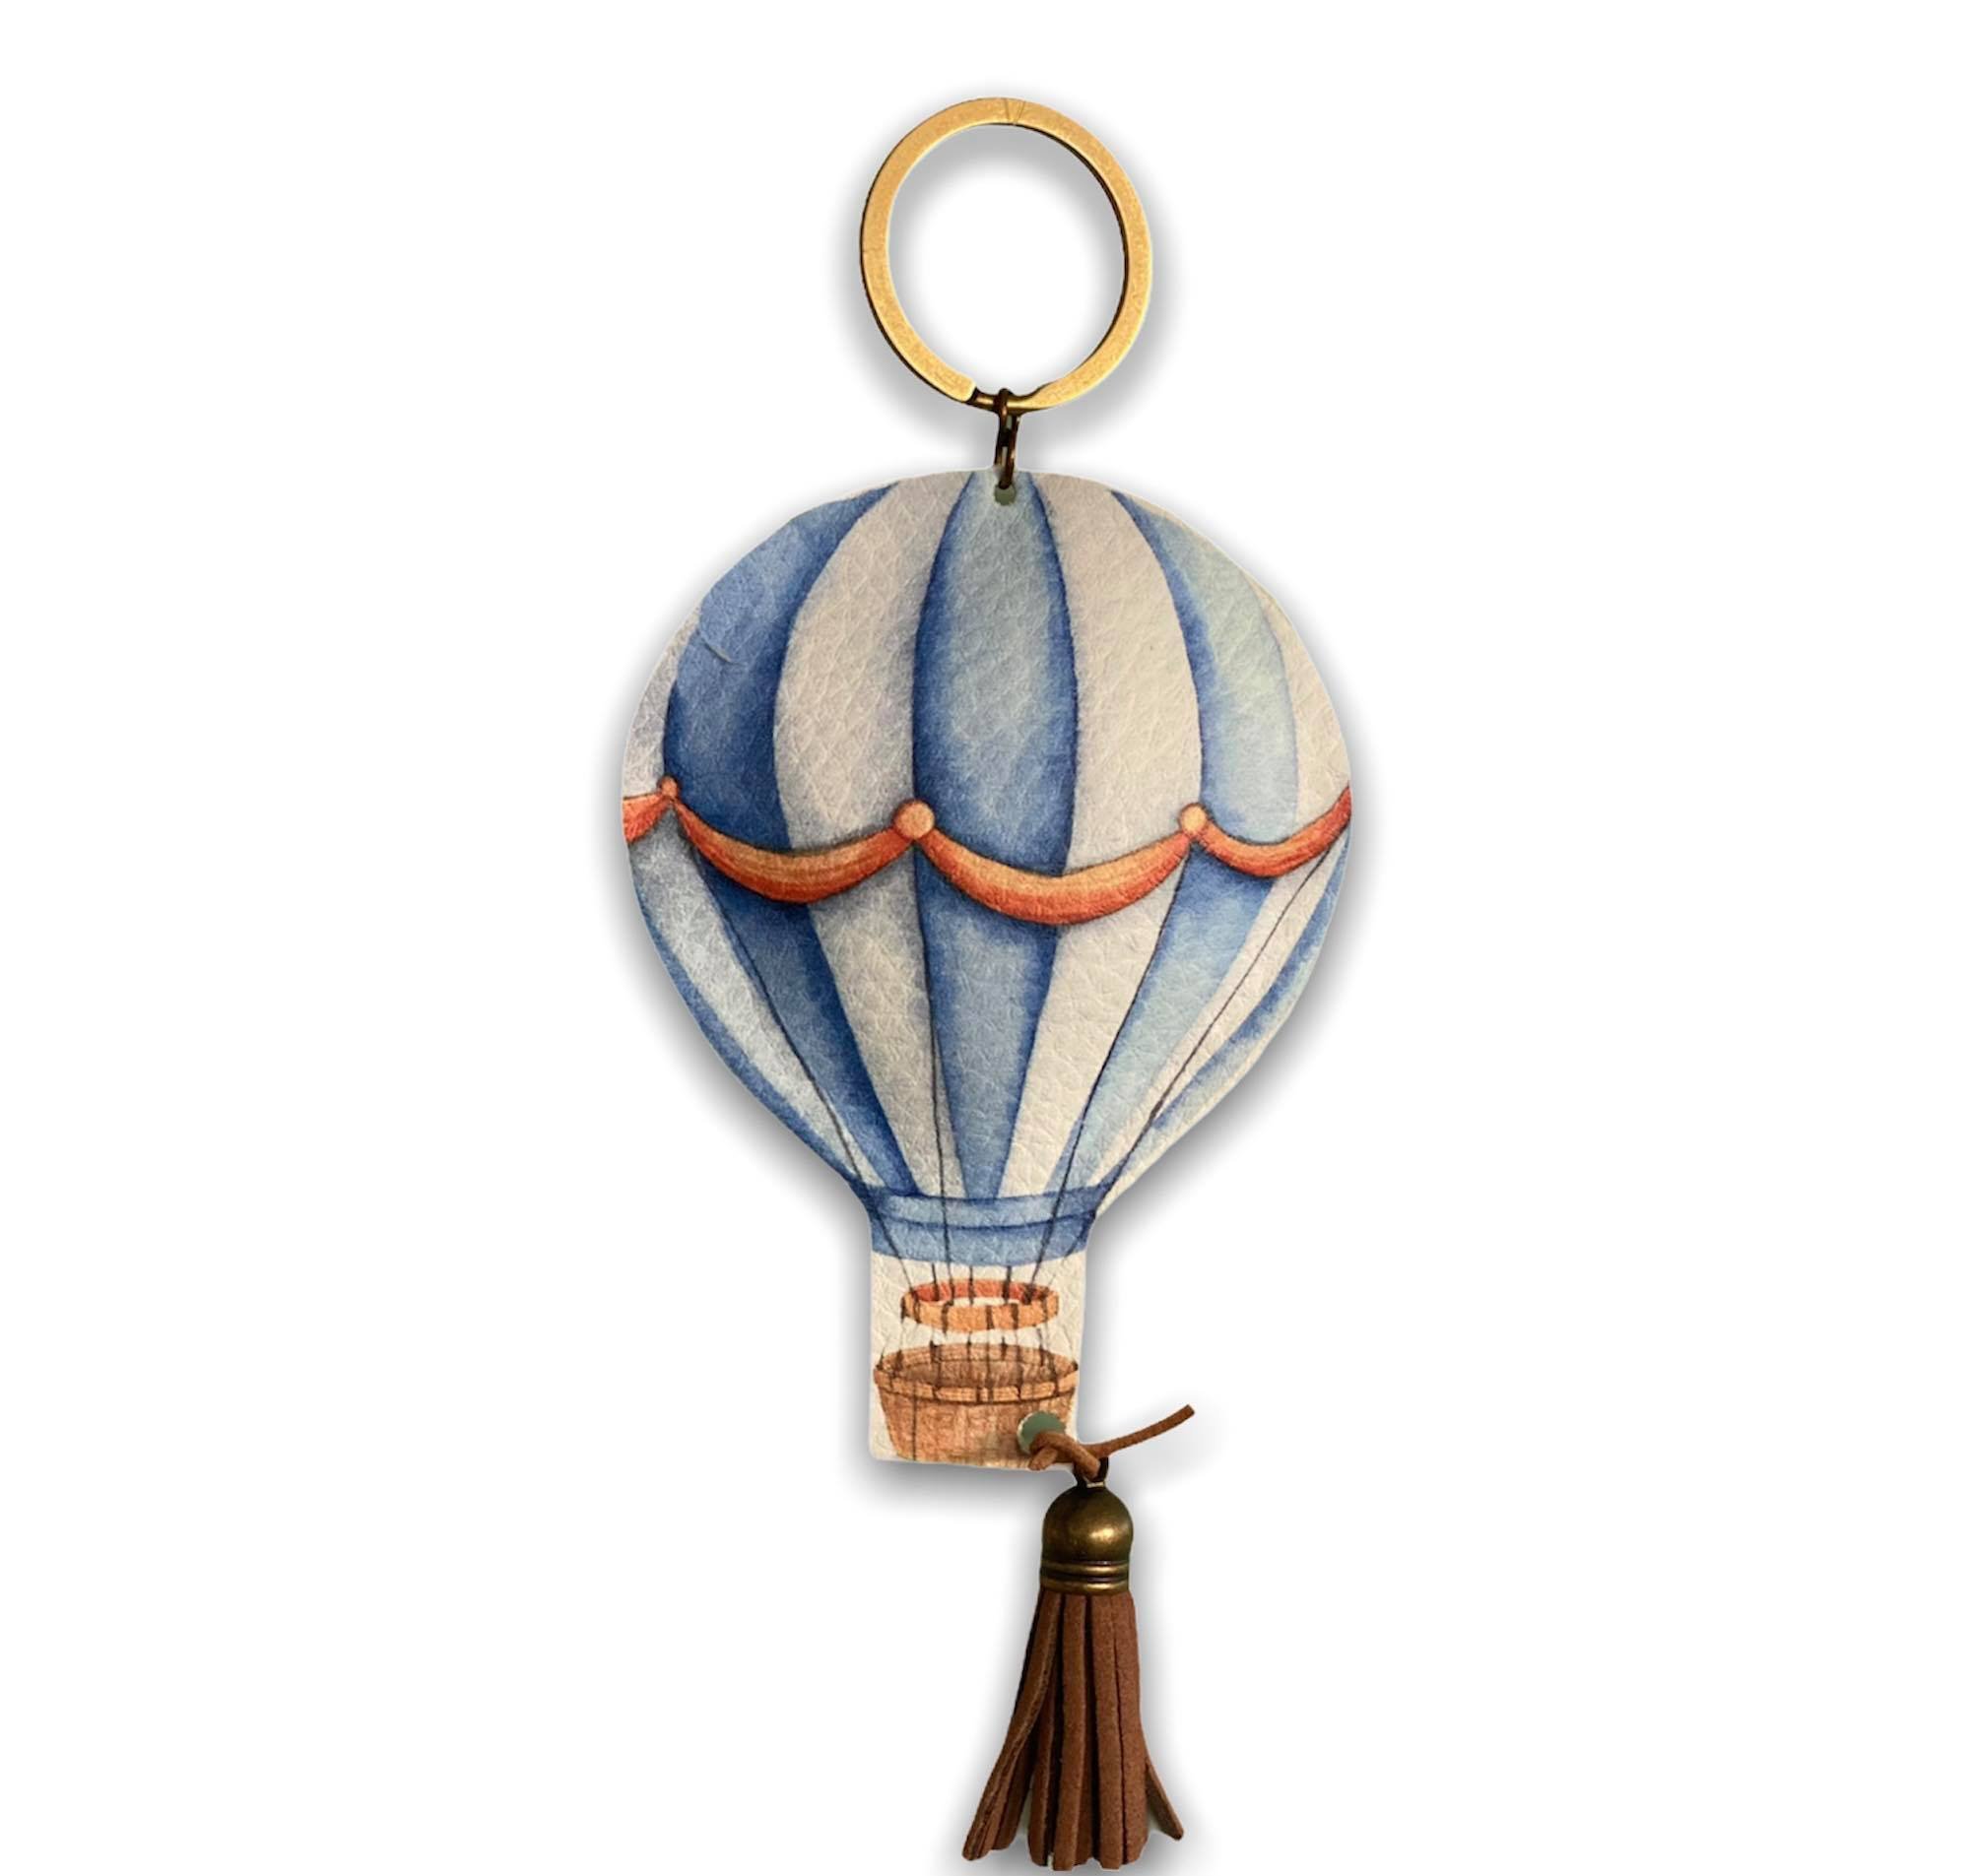 Bonbonniere airballoon